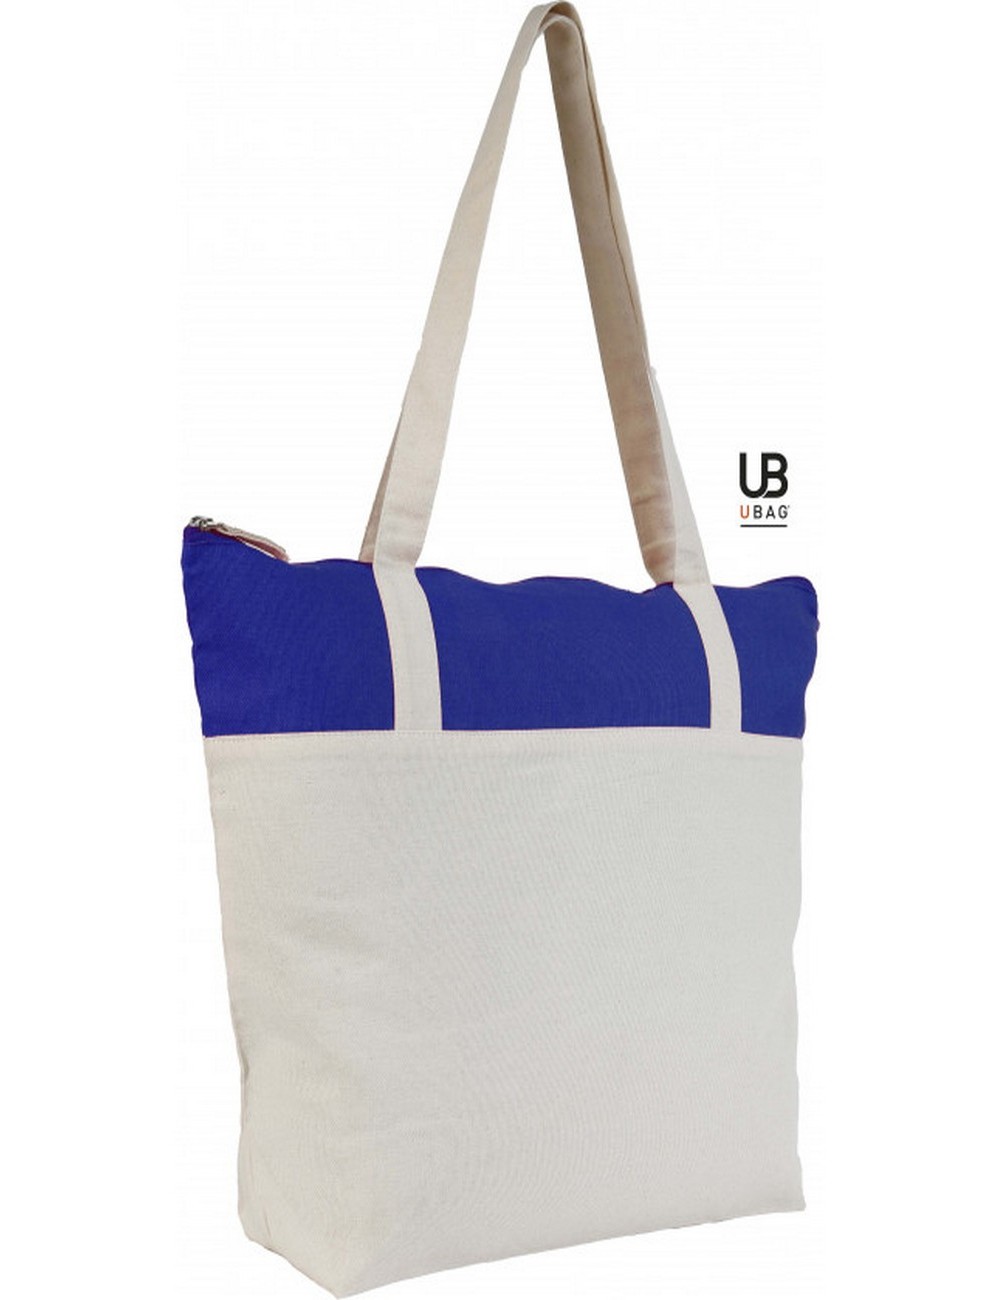 UBAG Paris bag